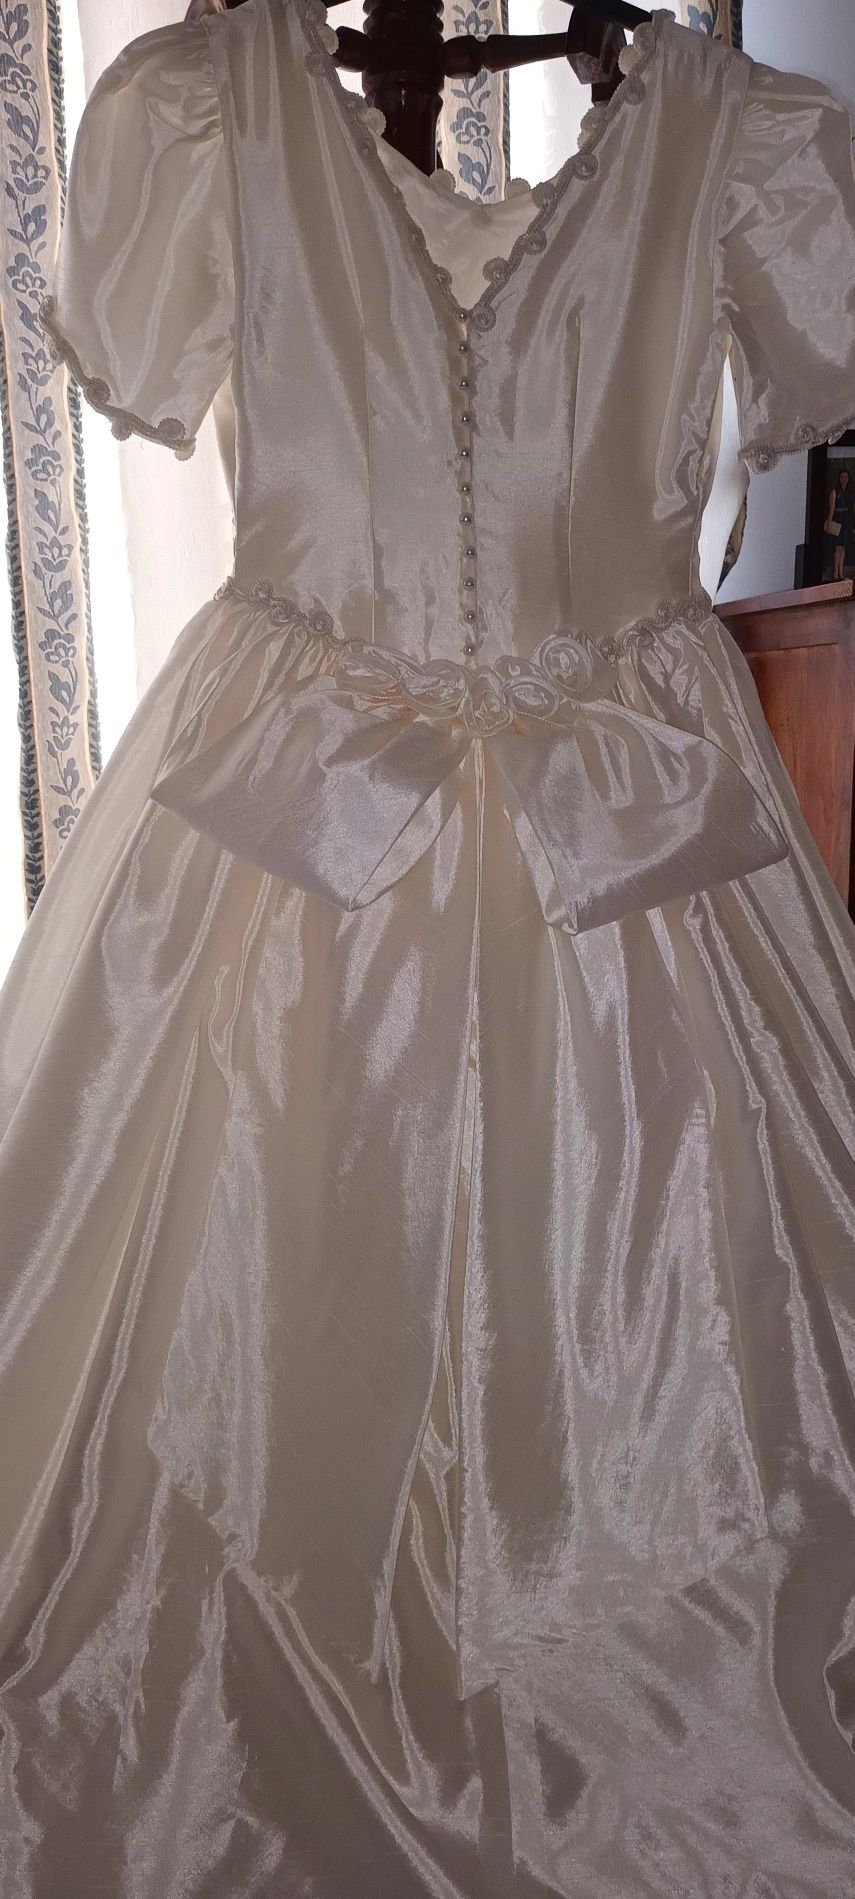 Vestido de noiva tm 44